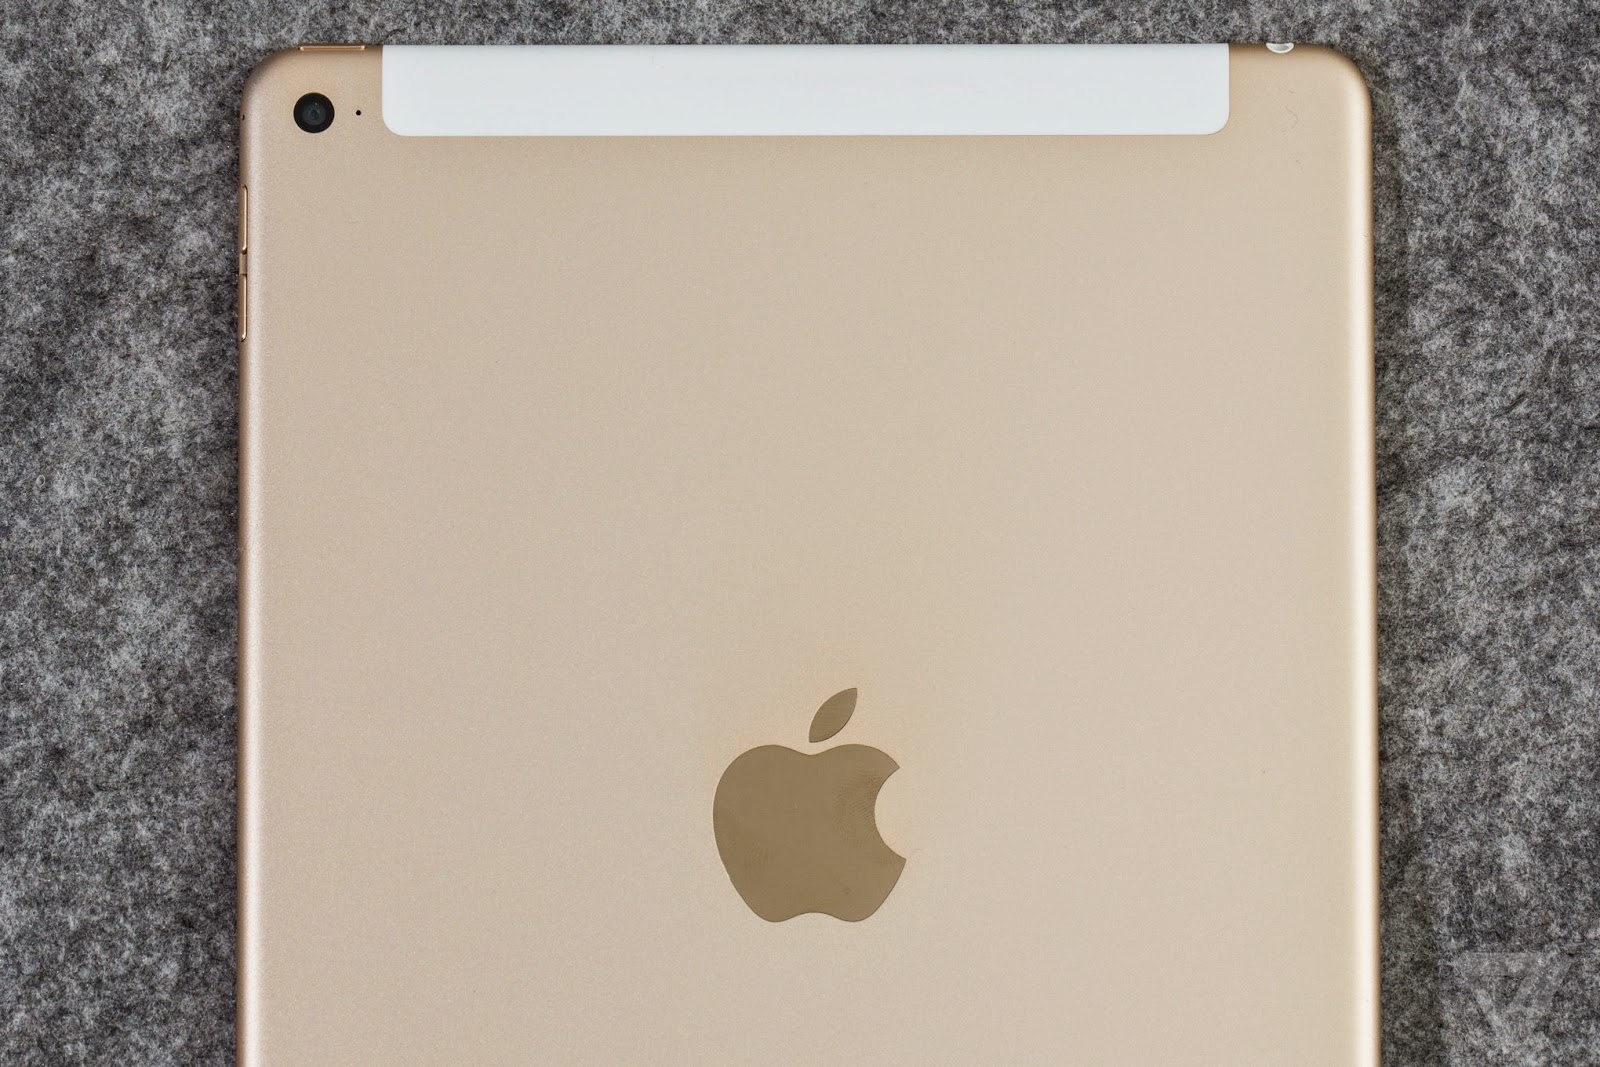 Apple iPad Air 2 Full Spesifikasi dan review (harga, kekurangan, kelebihan)